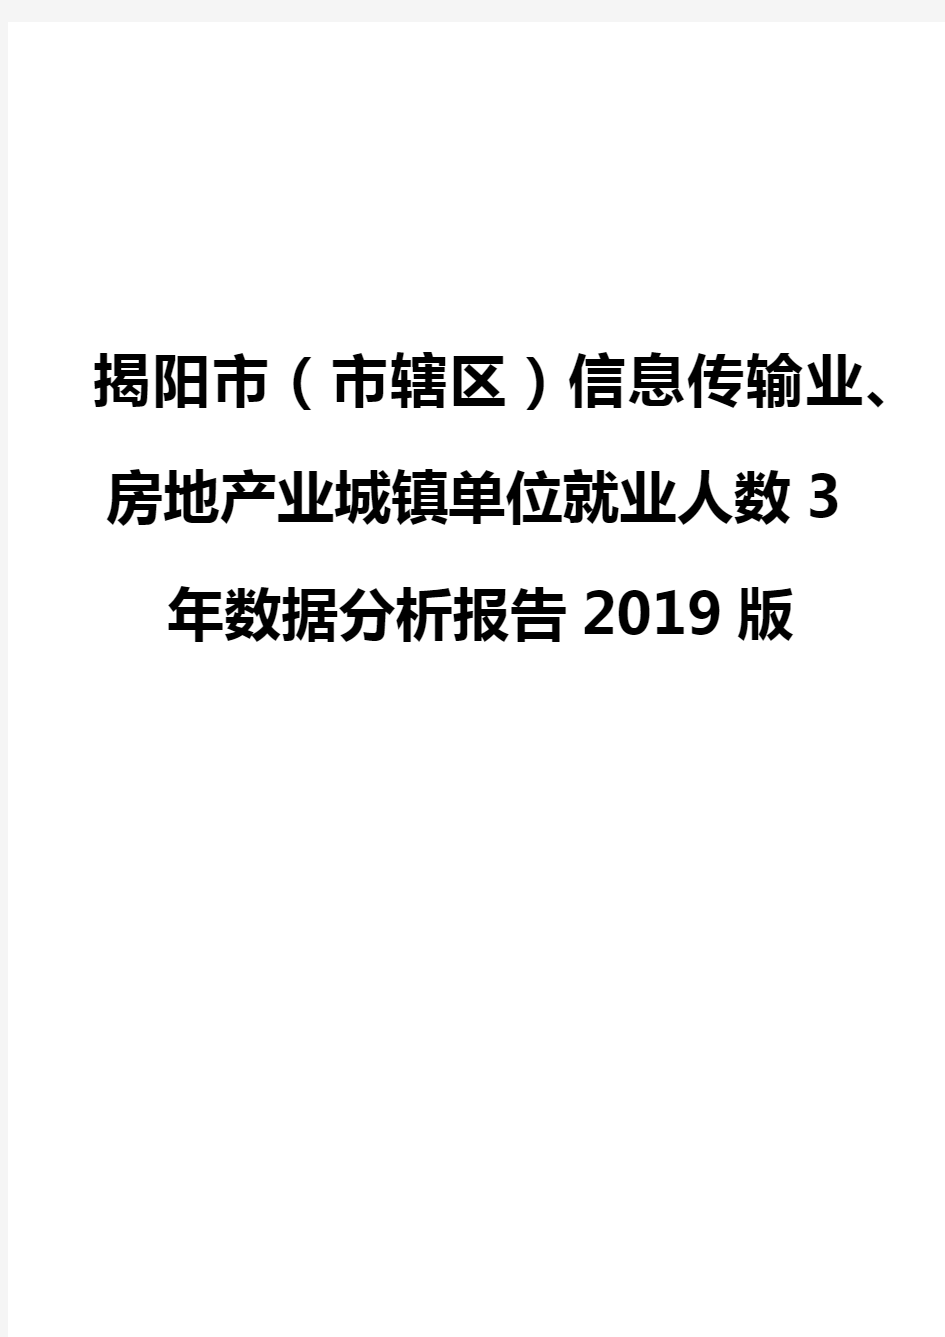 揭阳市(市辖区)信息传输业、房地产业城镇单位就业人数3年数据分析报告2019版